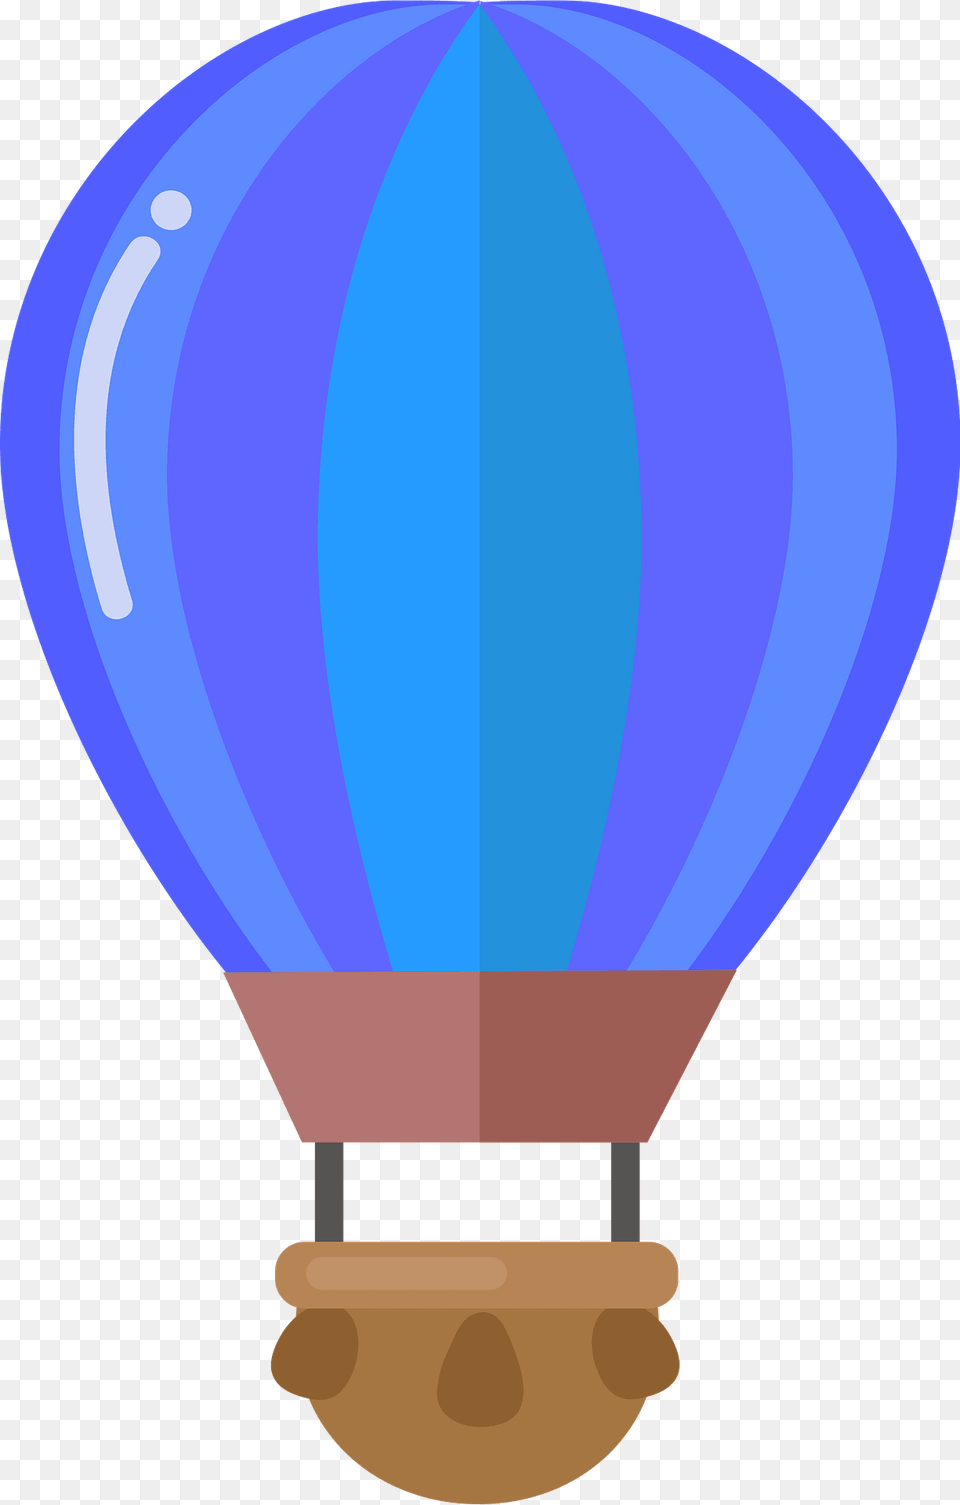 Hot Air Balloon Clipart, Aircraft, Hot Air Balloon, Transportation, Vehicle Png Image